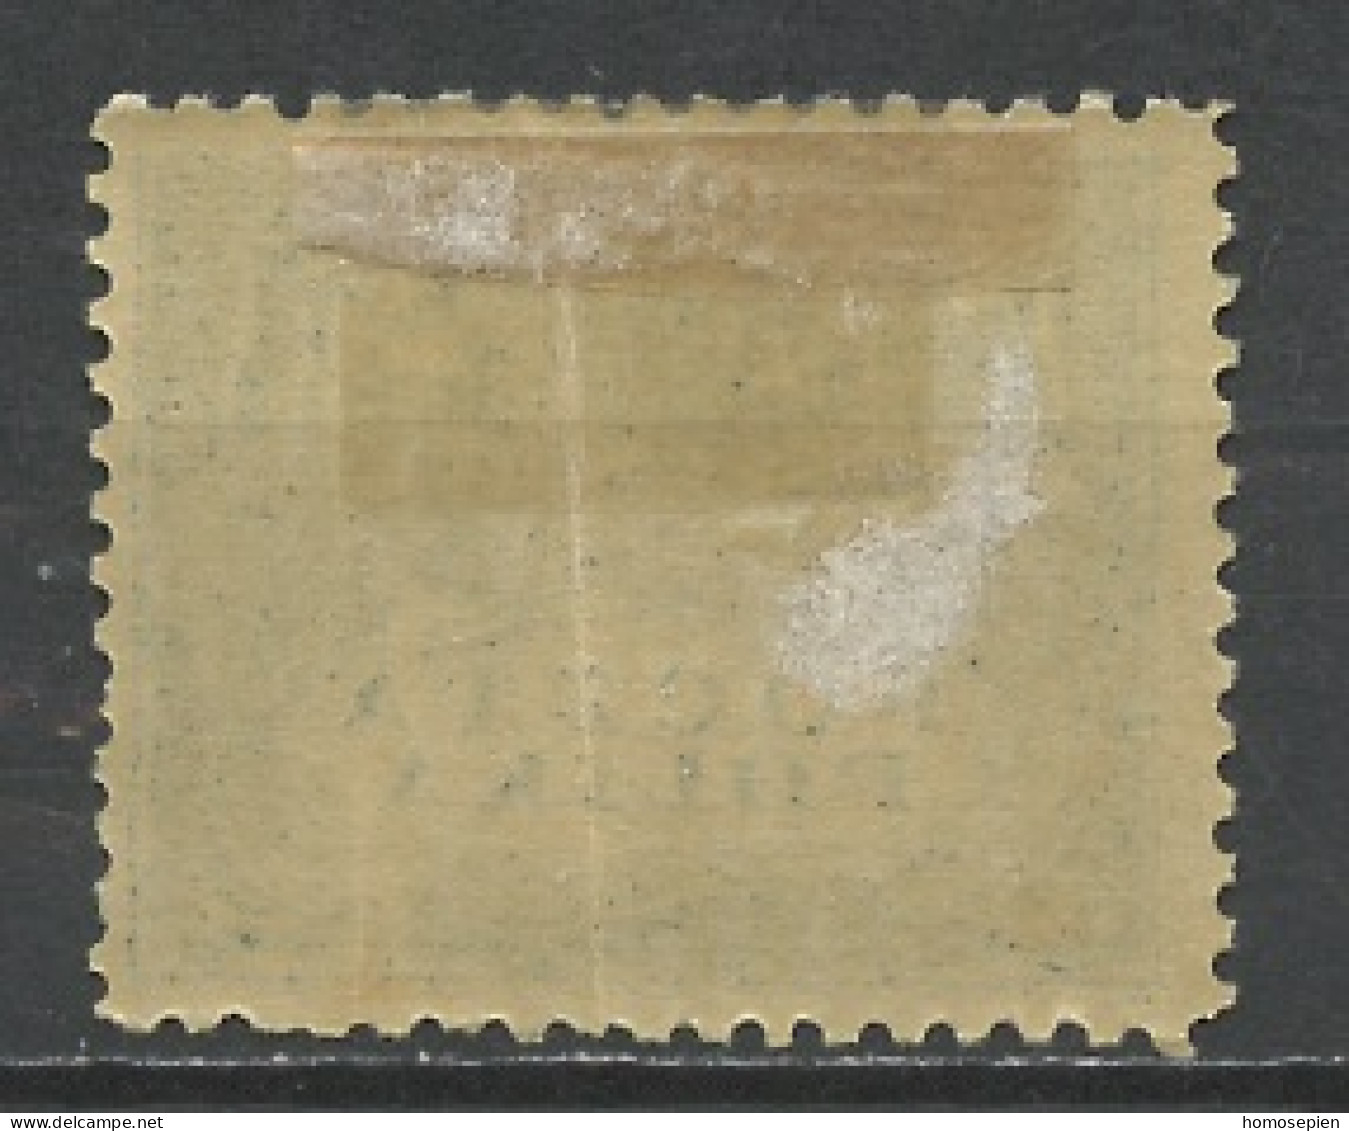 Pologne - Poland - Polen 1919 Y&T N°193 - Michel N°86 * - 2k Symbole De L'agriculture - Unused Stamps